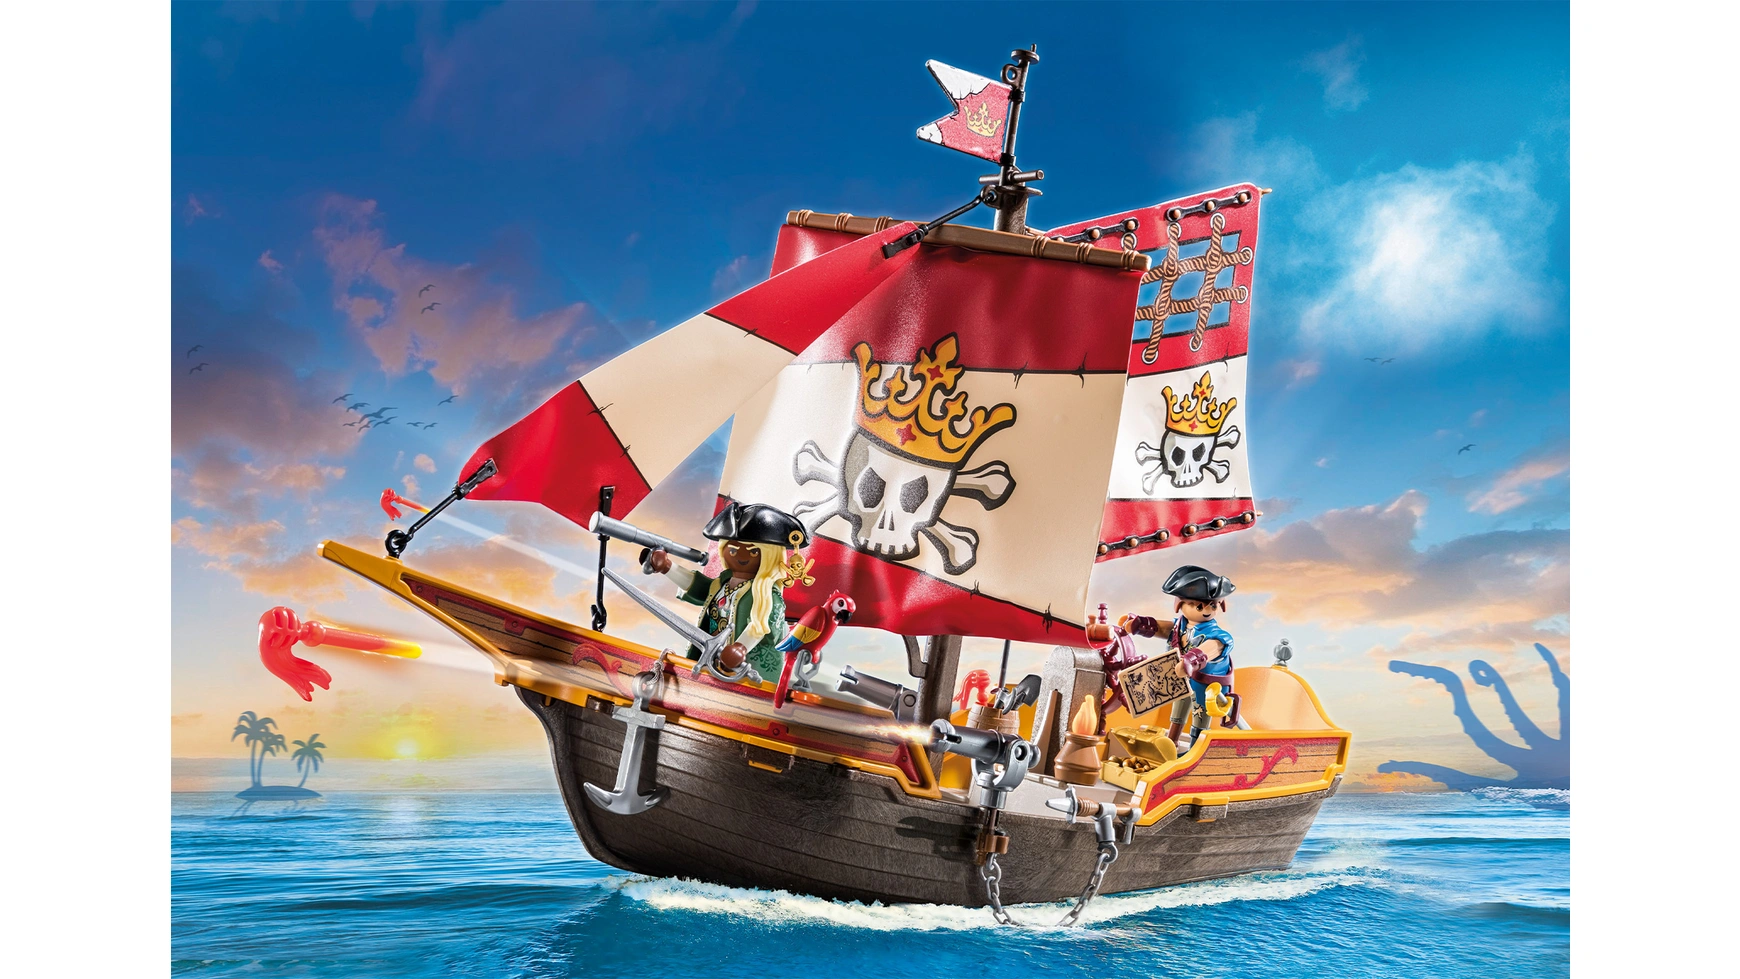 Пираты маленький пиратский корабль Playmobil корабль анна в бутылке паруса микс 7 5 4 2 5см